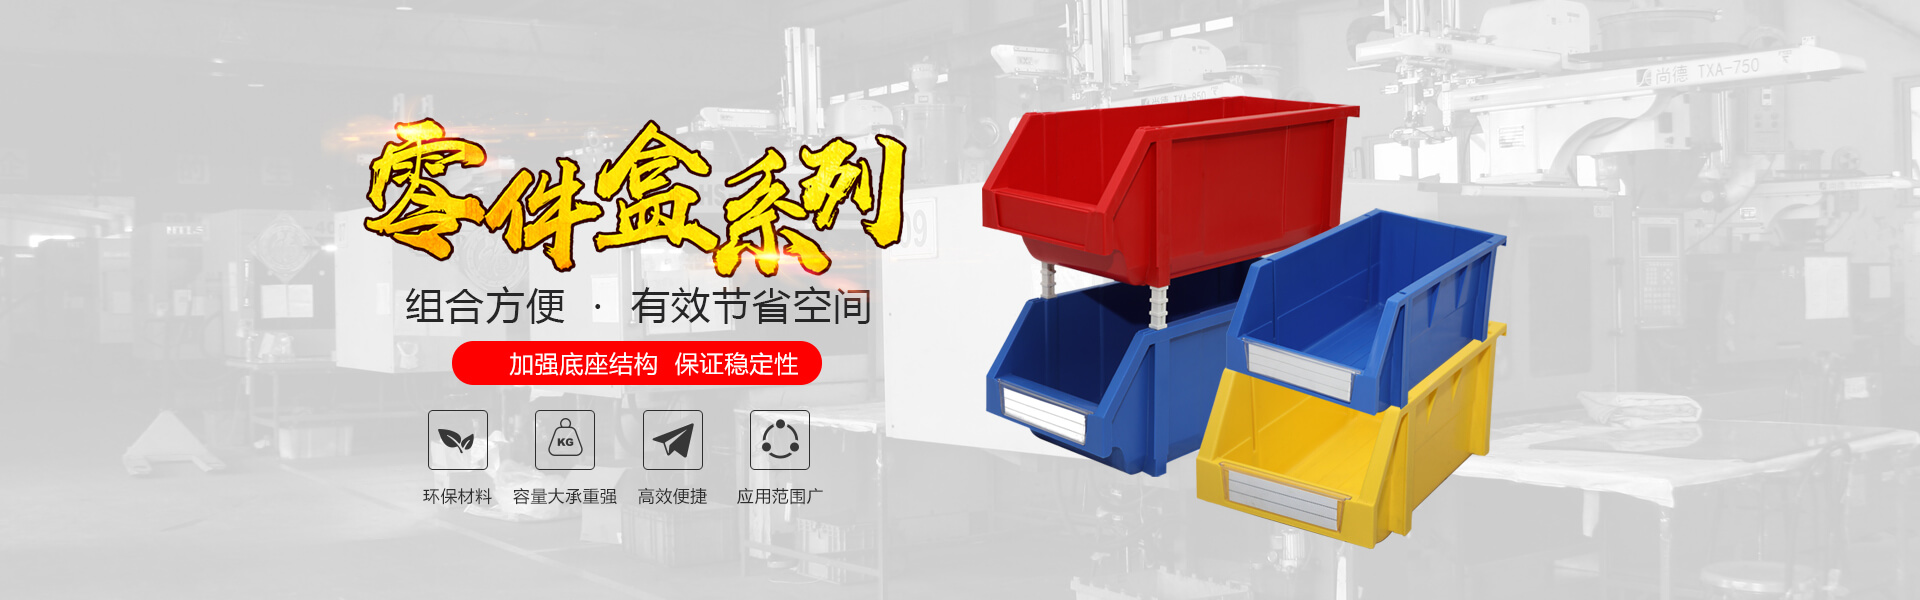 青岛尊龙凯时 - 人生就是搏!自动化主营零件盒,塑料零件盒,塑料托盘等产品!